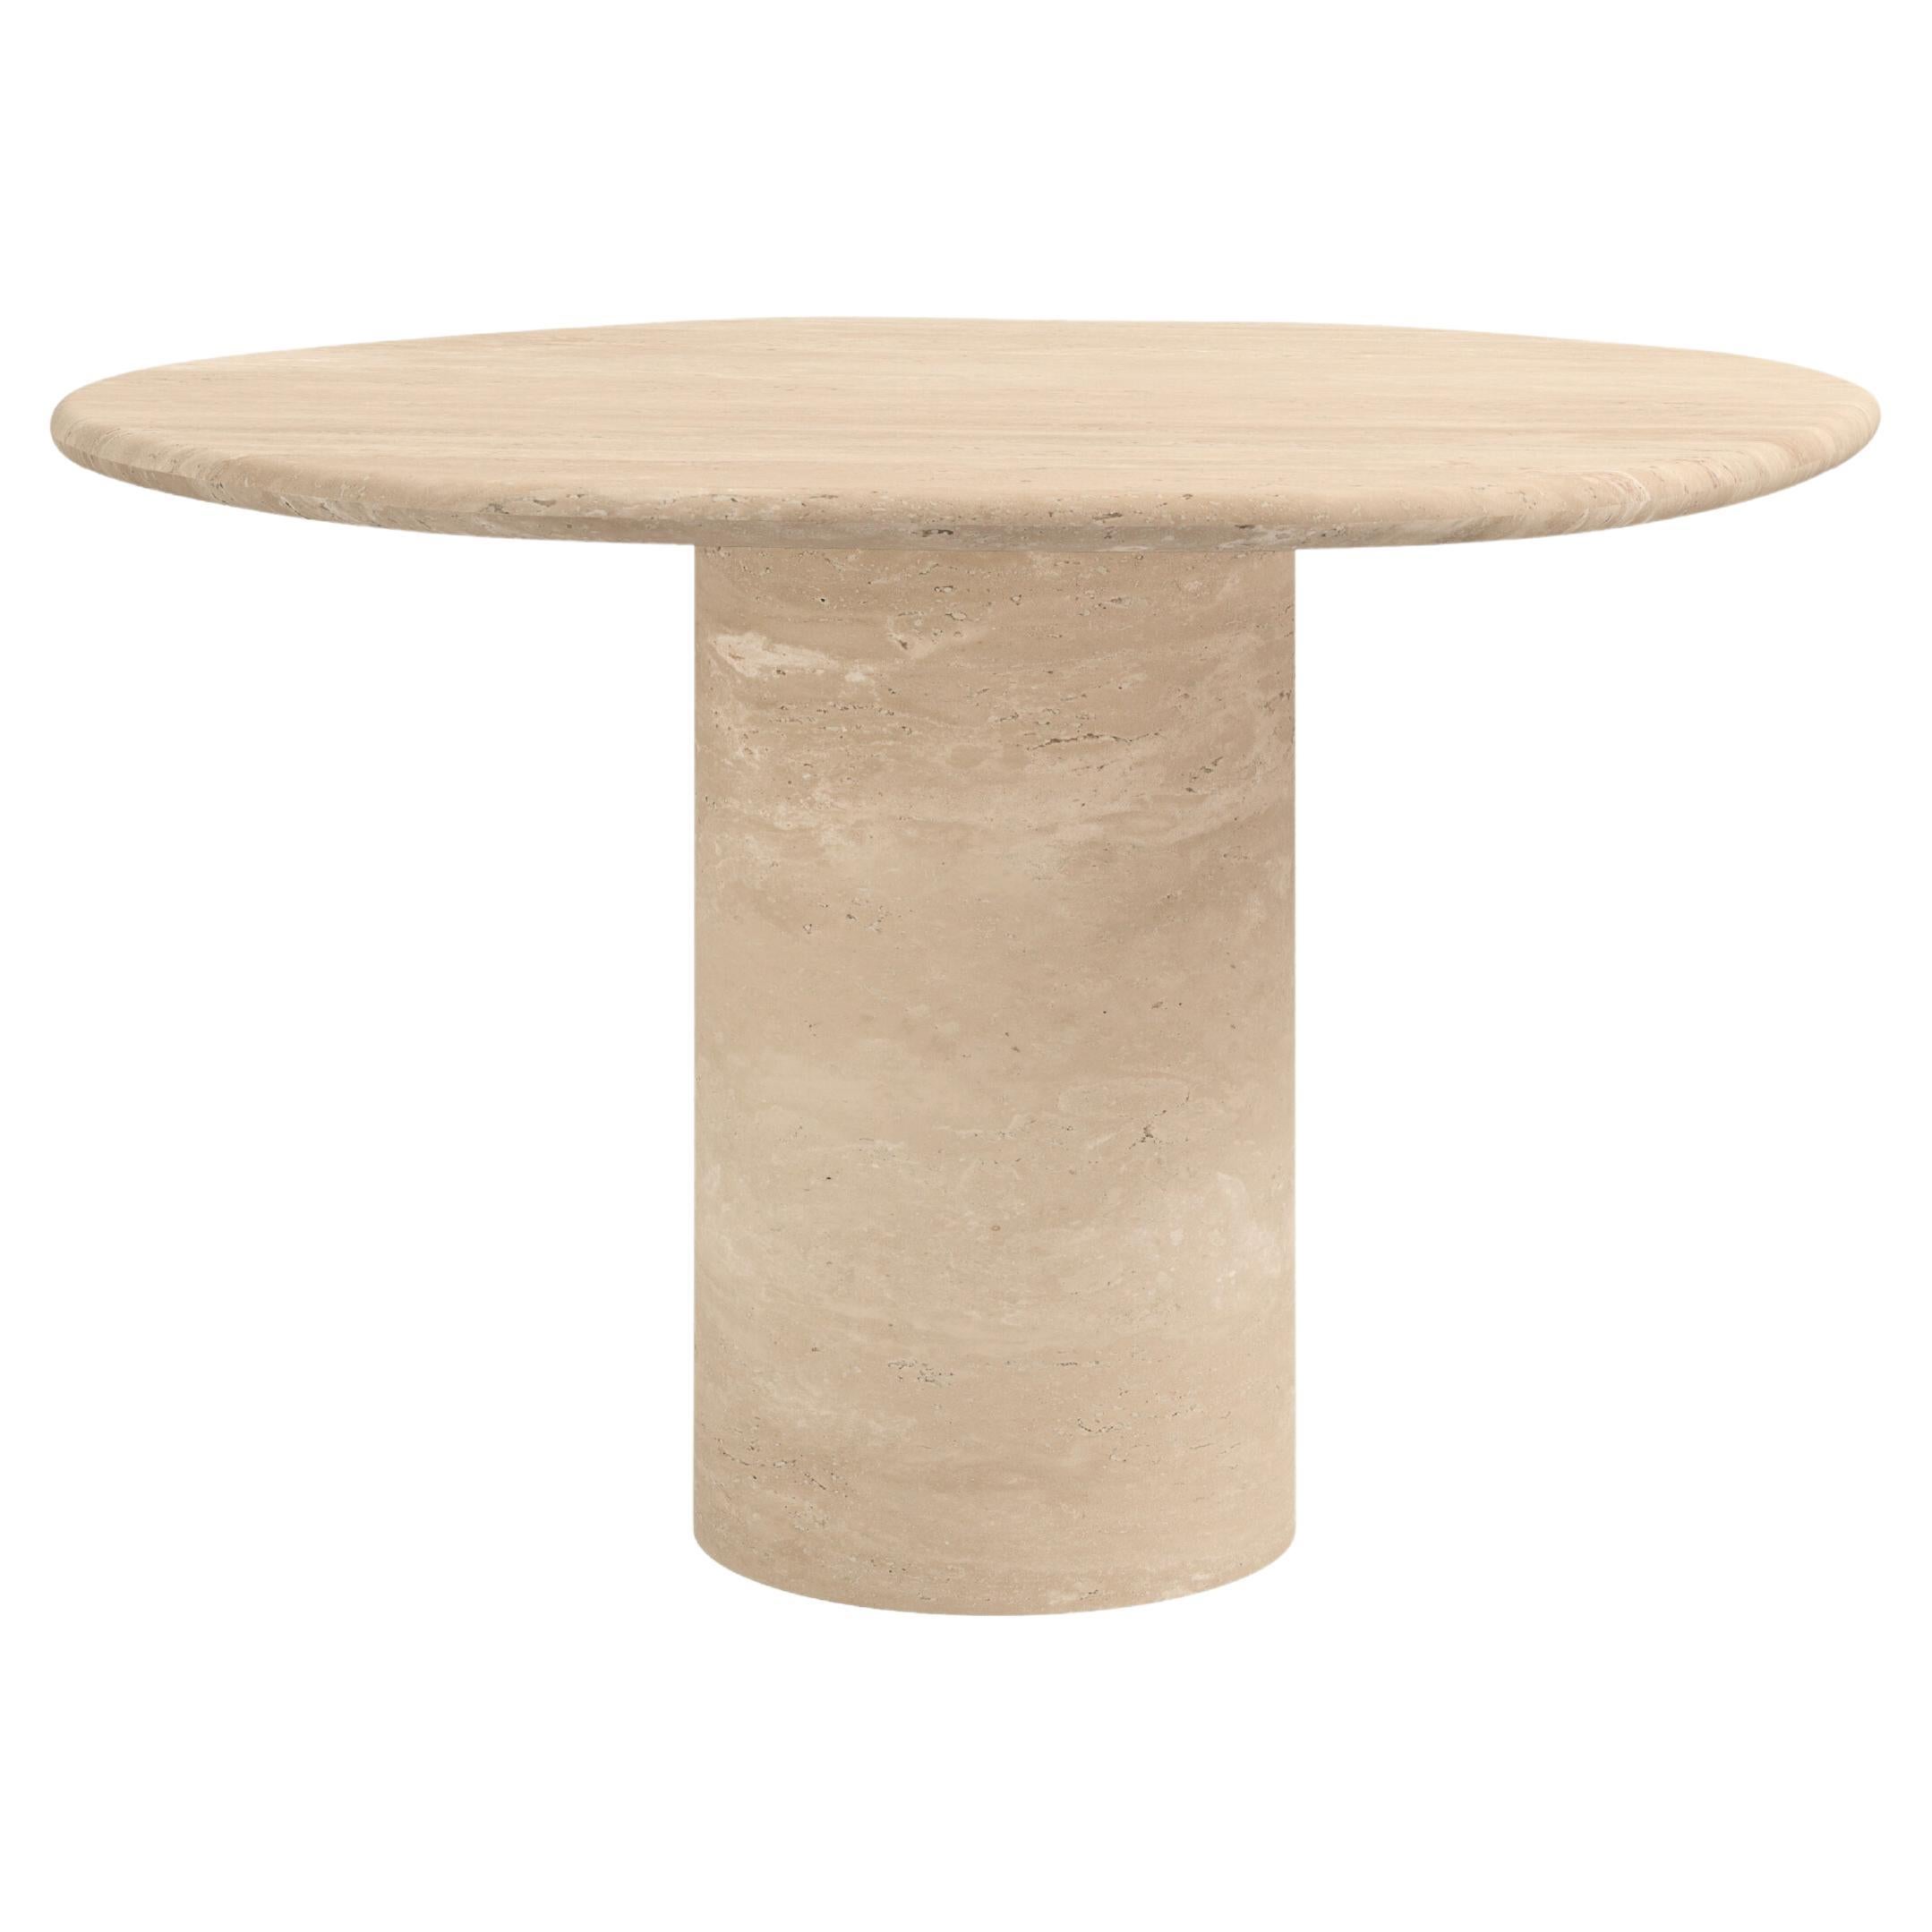 FORM(LA) Lago Round Dining Table 36”L x 36”W x 30”H Travertino Crema VC For Sale